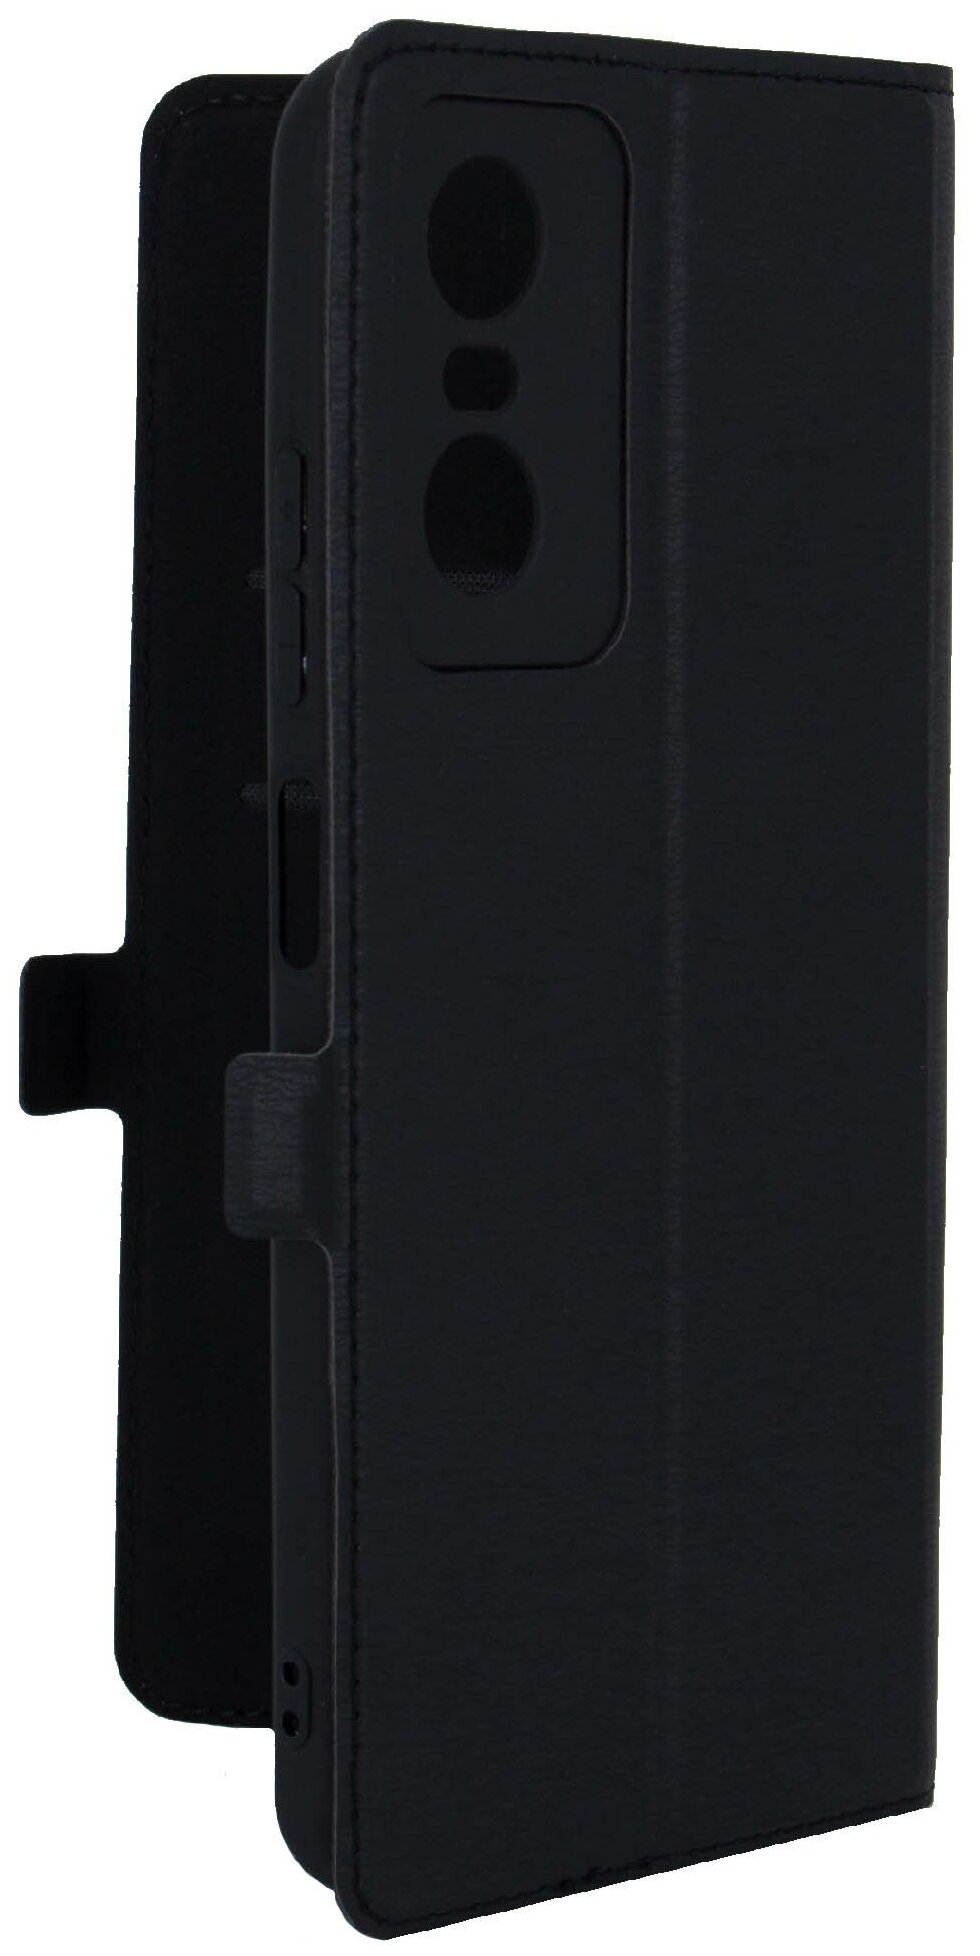 Чехол на Tecno POP 6 Pro (Техно ПОП 6 Про) черный чехол книжка эко-кожа с функцией подставки отделением для карт и магнитами Book case, Miuko